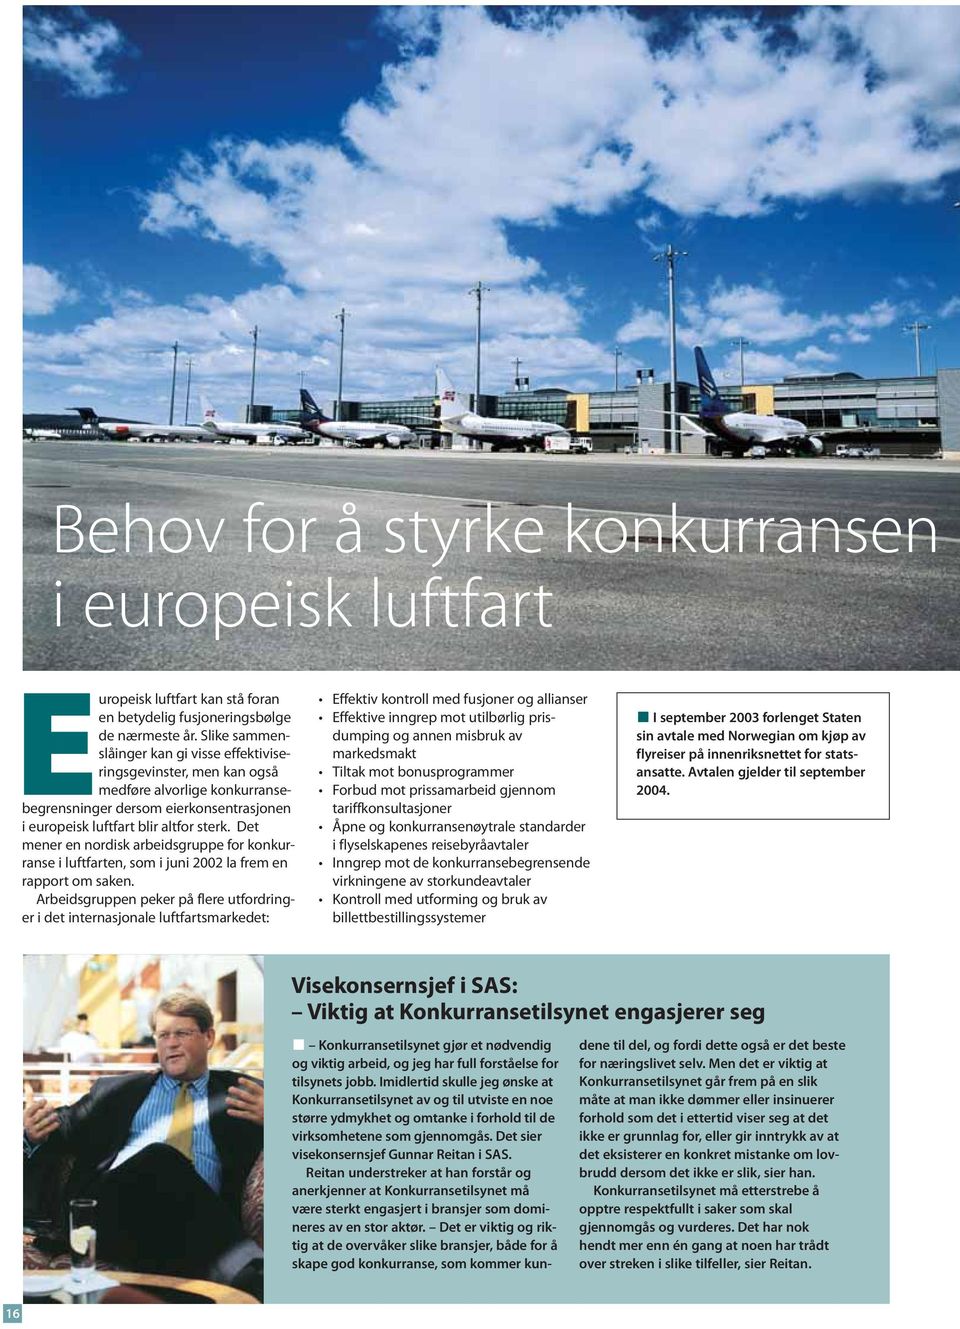 Det mener en nordisk arbeidsgruppe for konkurranse i luftfarten, som i juni 2002 la frem en rapport om saken.